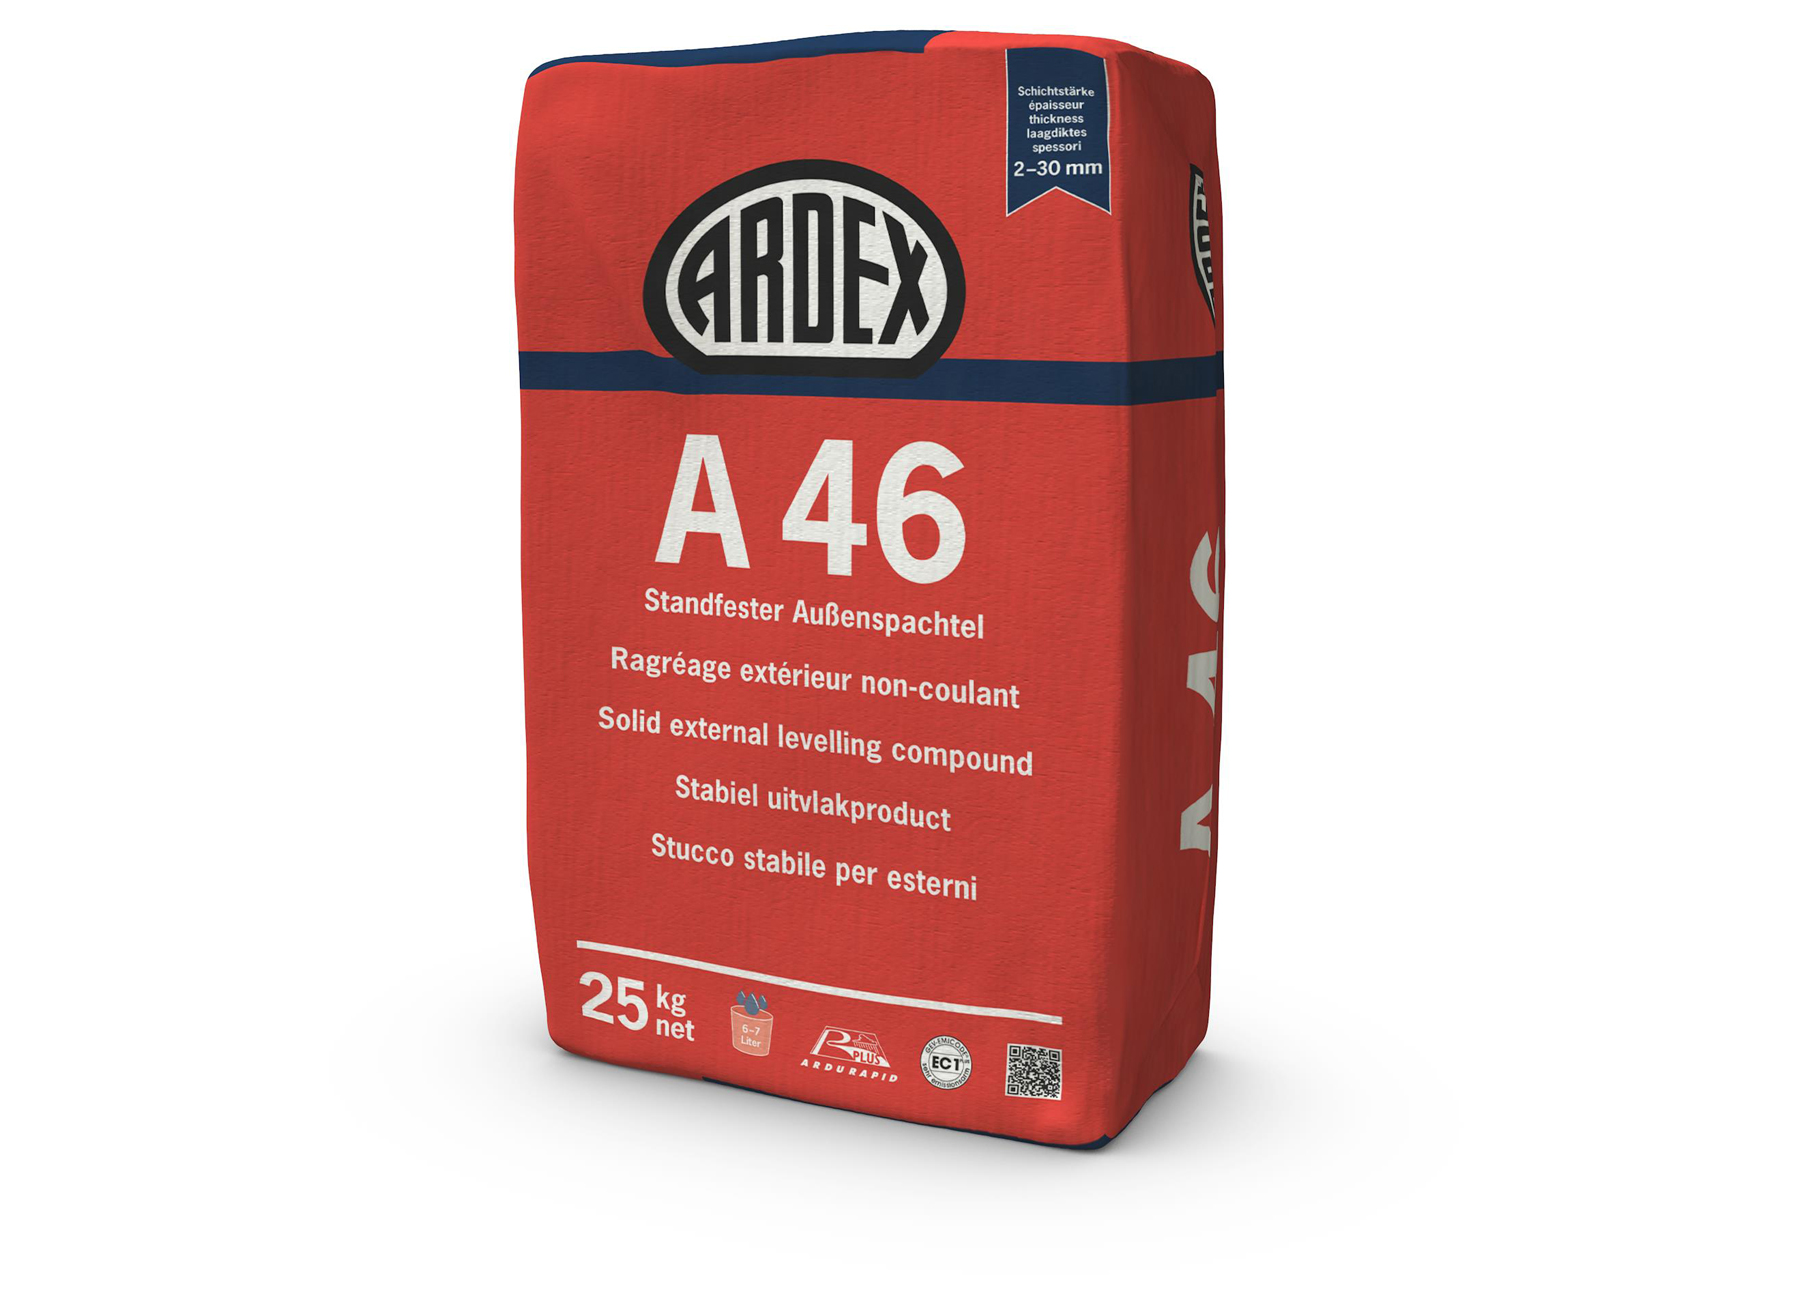 ARDEX A46 RAGREAGE EXTERIEUR NON-COULANT 25KG